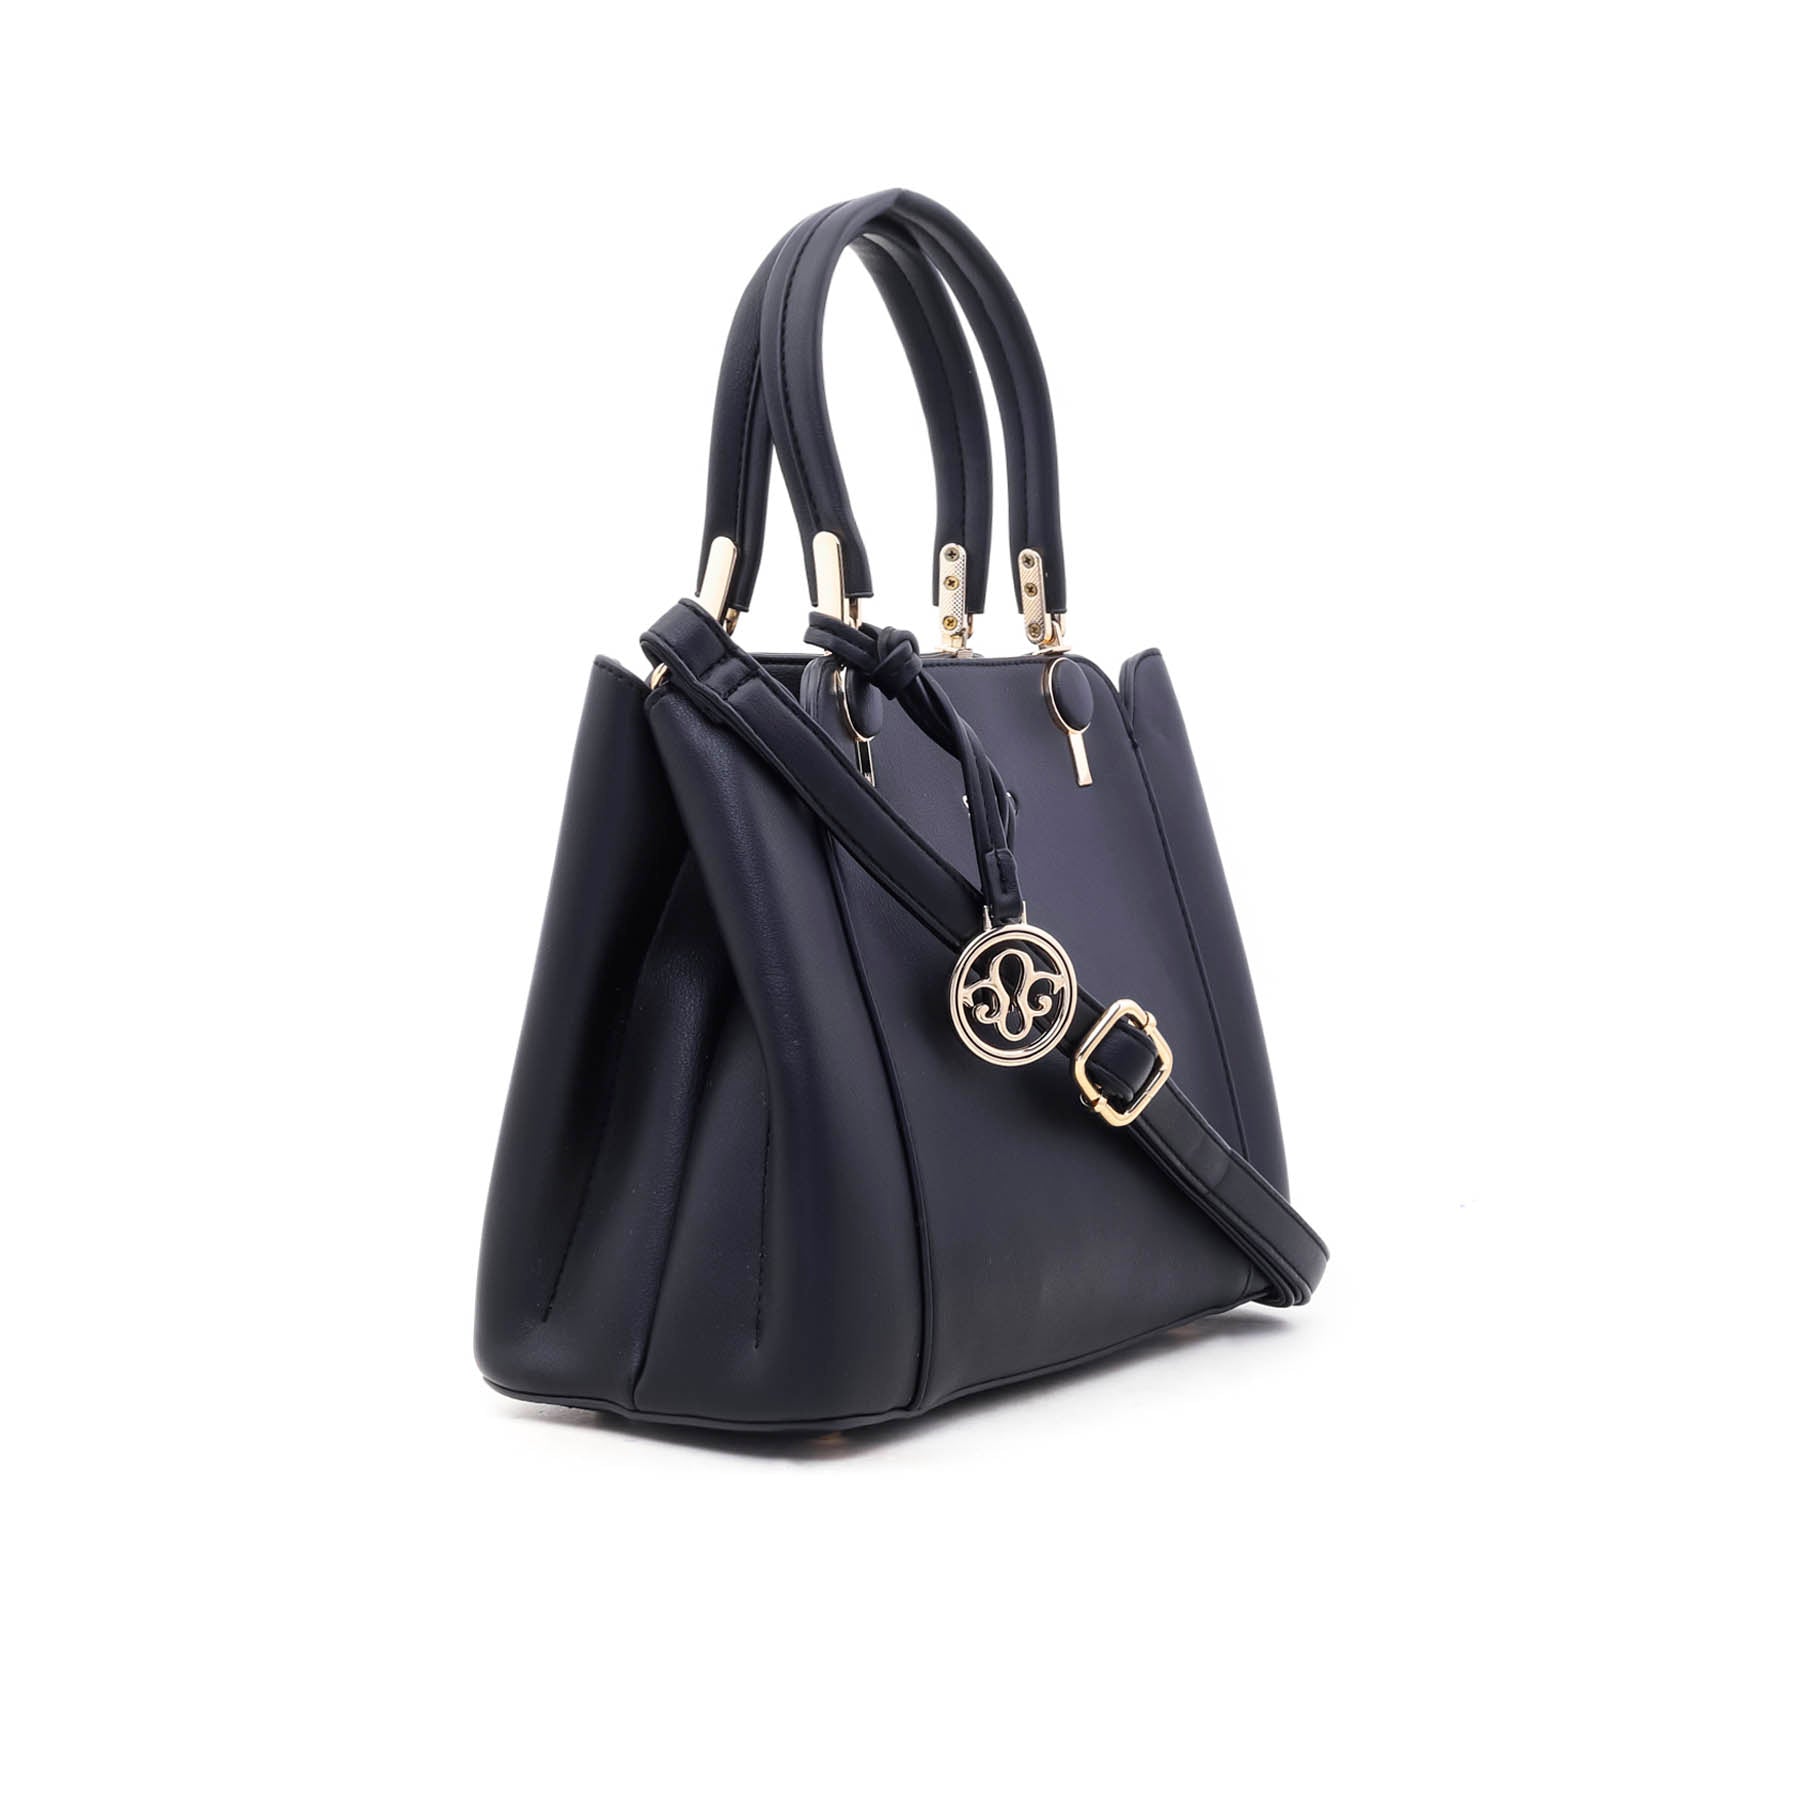 Black Formal Hand Bag P35237